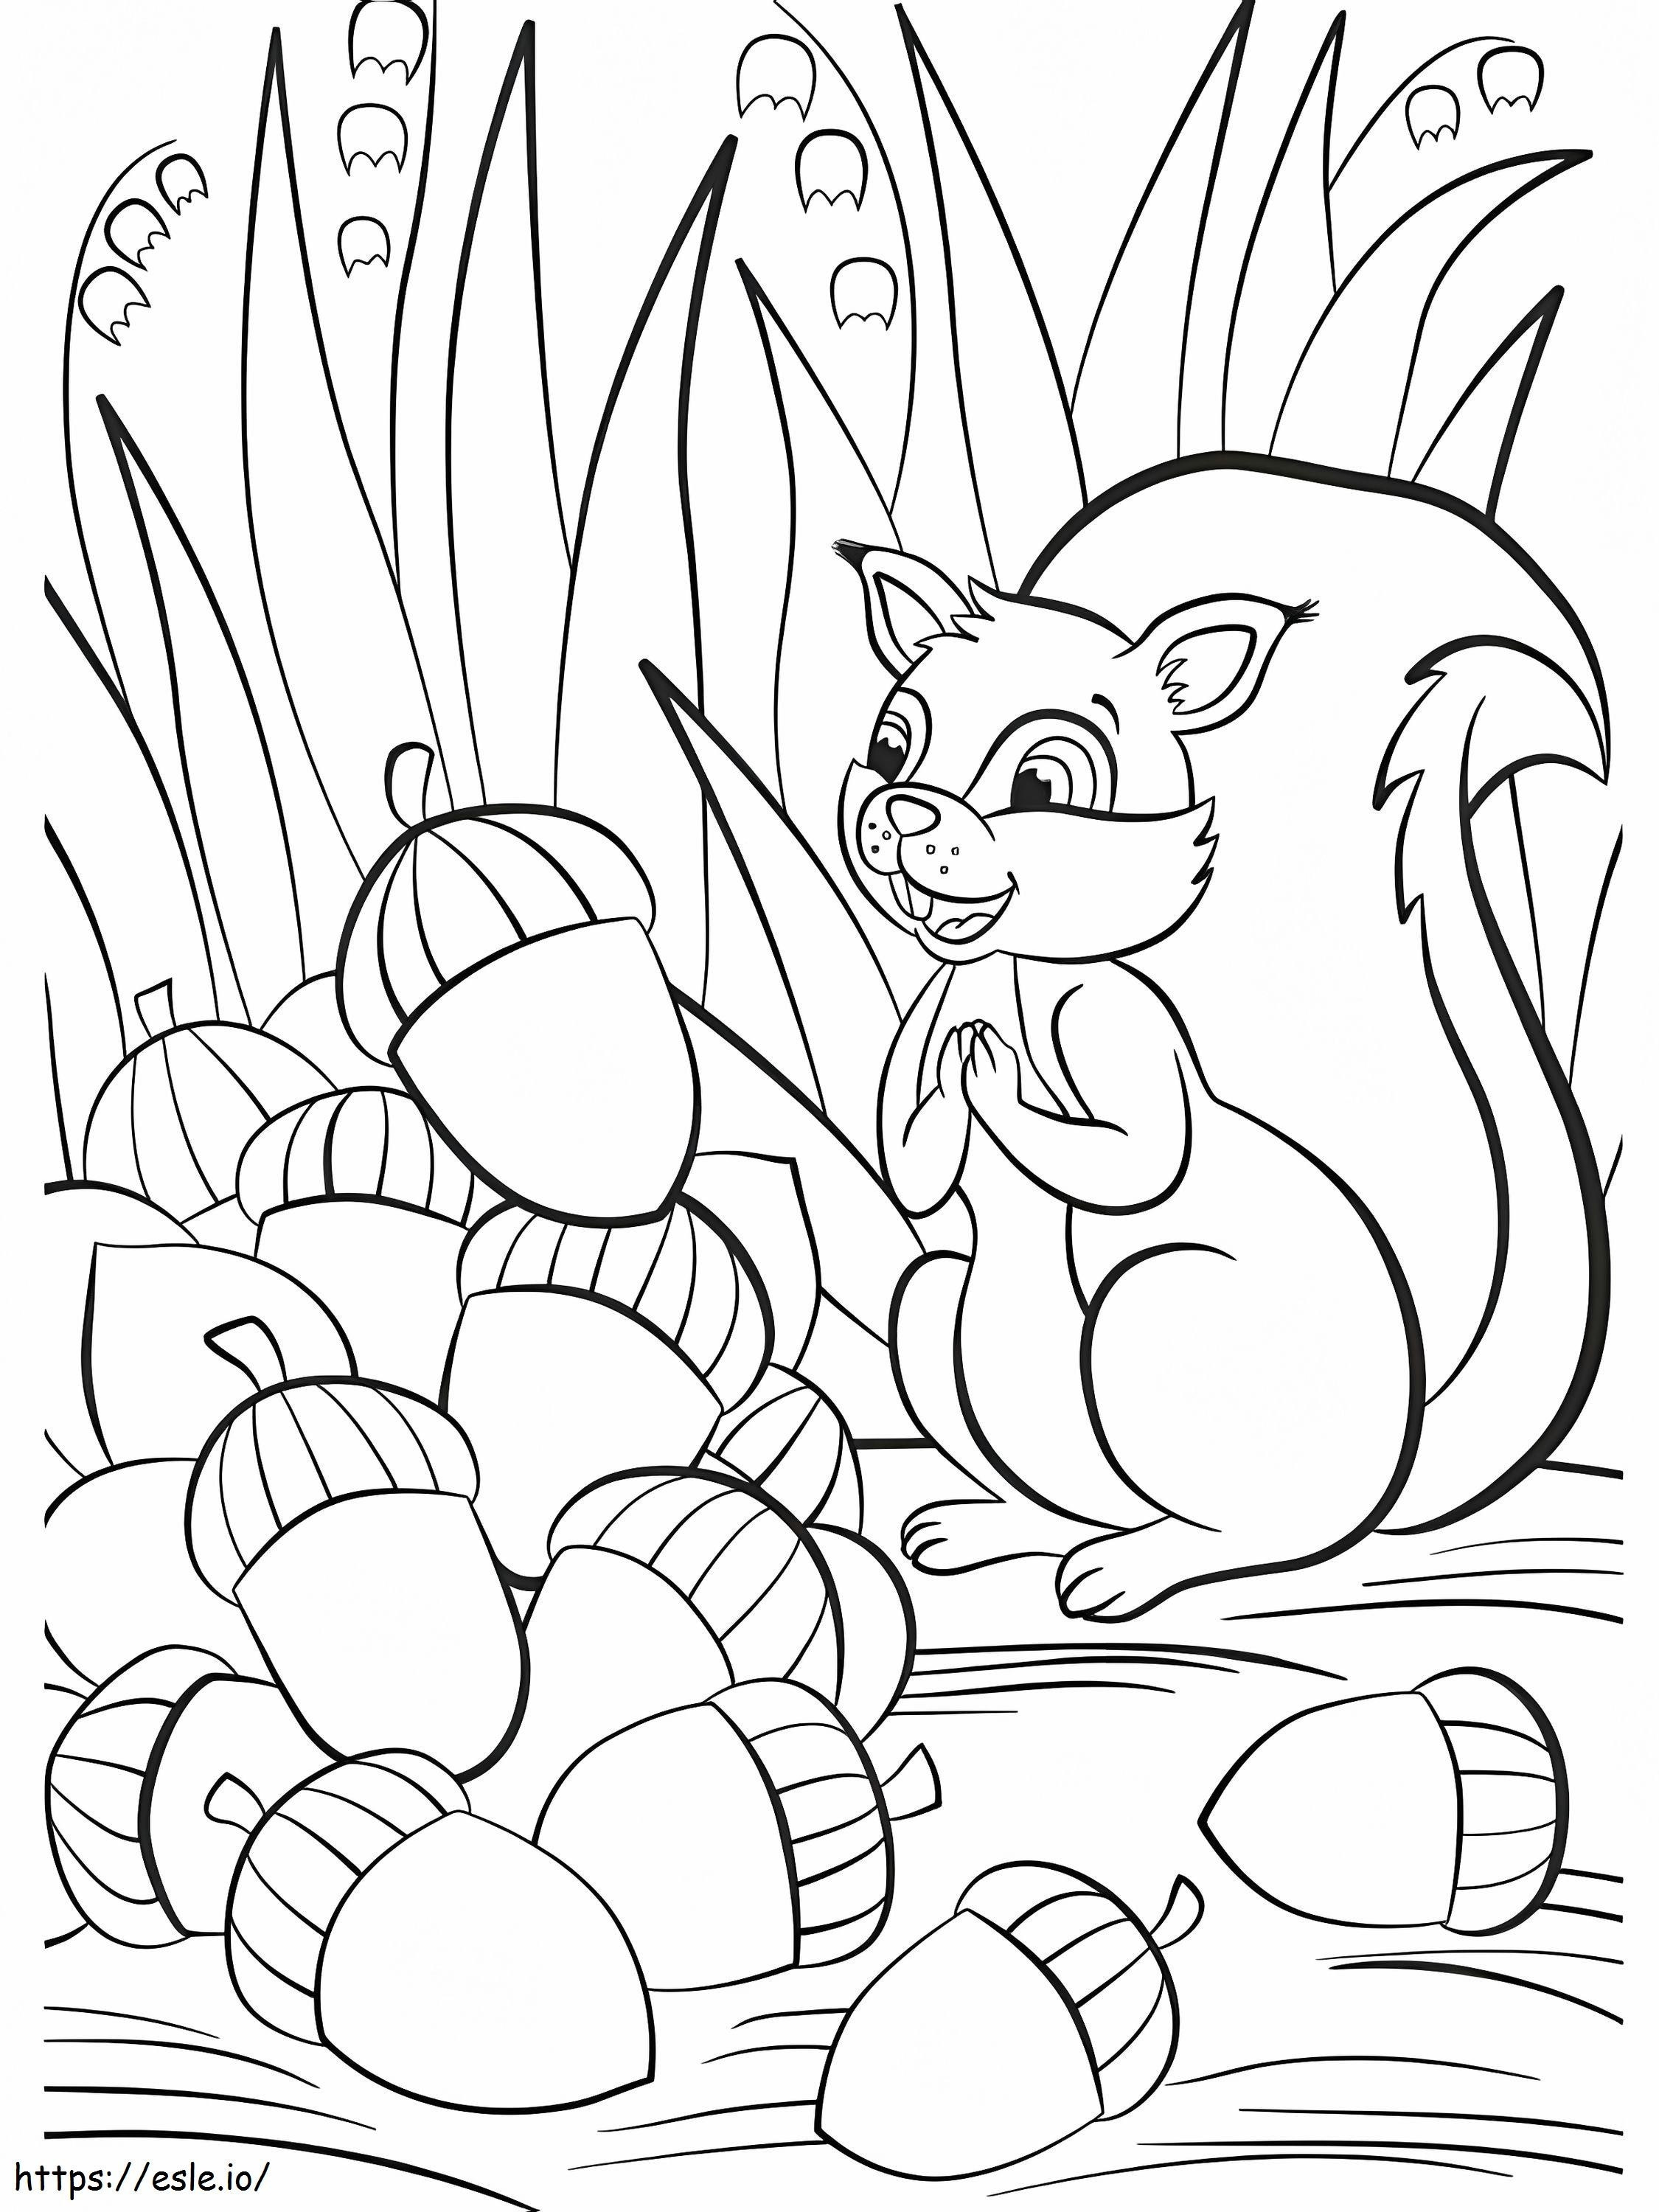 Veveriță Fericită Cu Ghindă de colorat